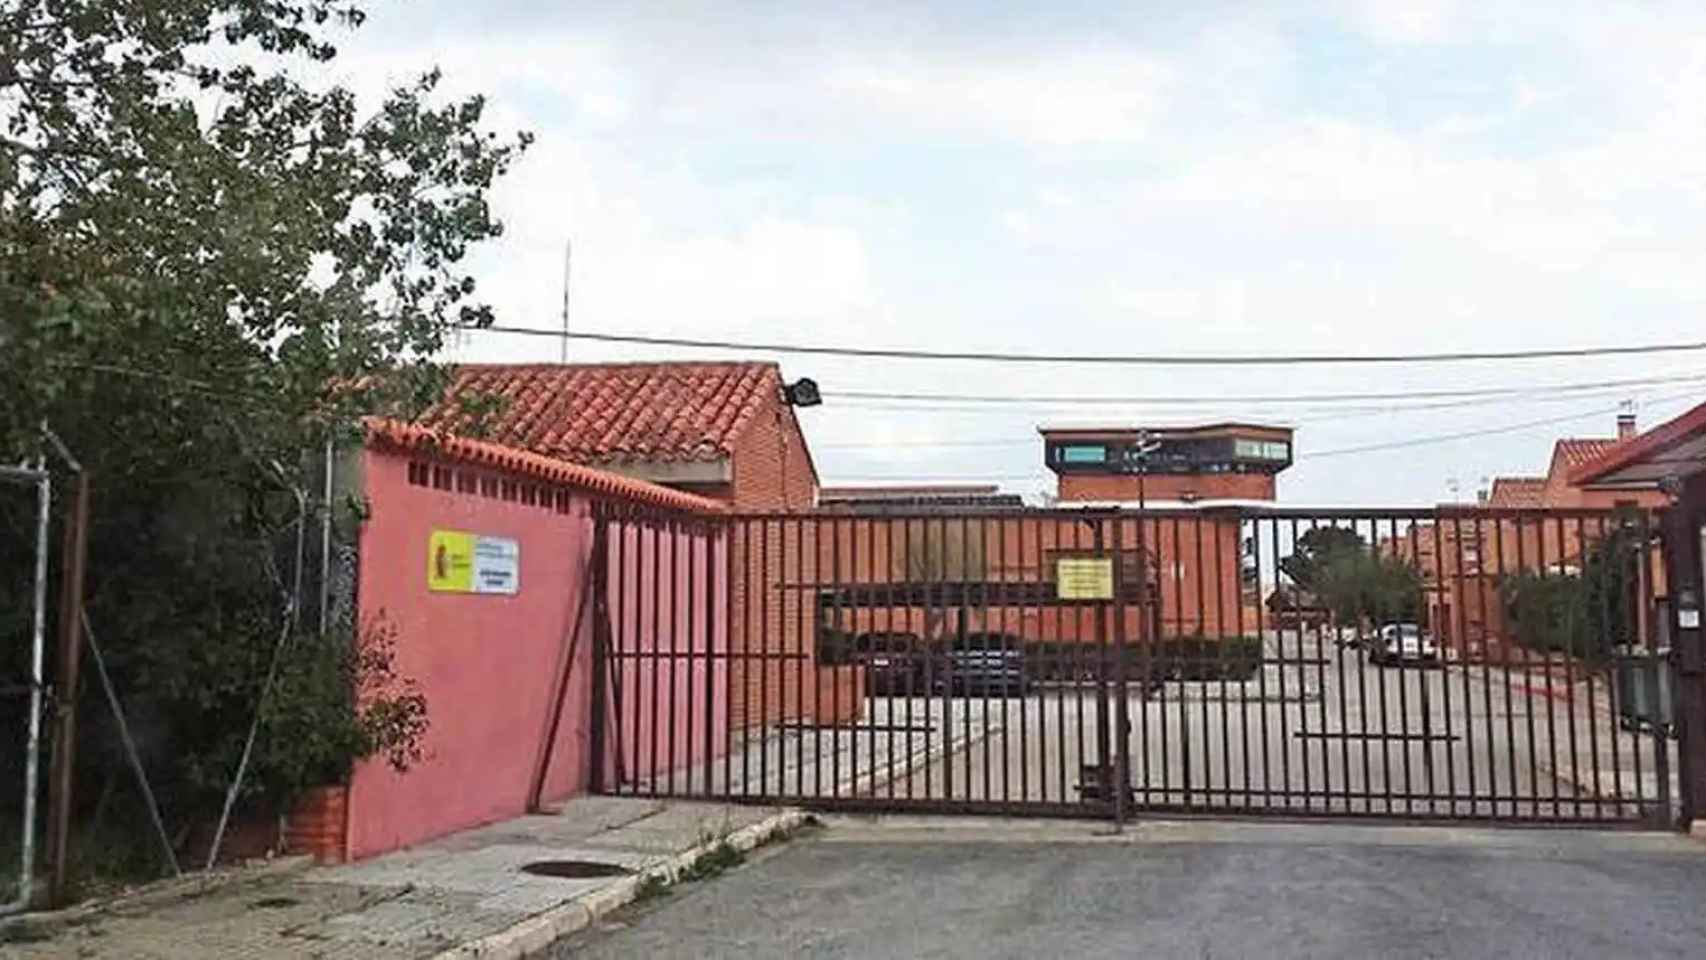 Puerta exterior del centro penitenciario de Albacete, conocido popularmente como La Torrecica.